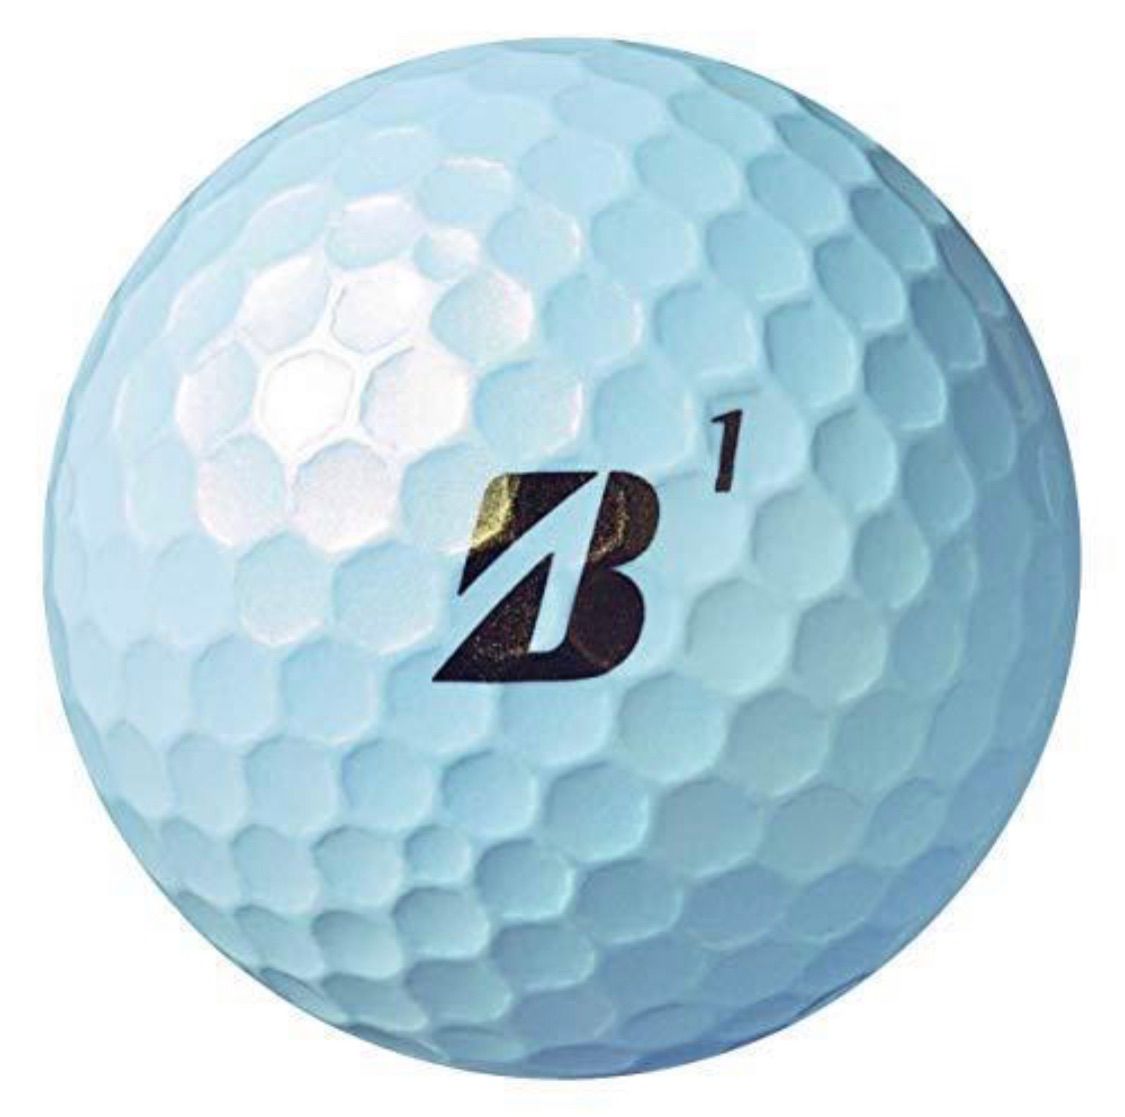 2ダース売り ブリヂストン ゴルフボール TOUR B JGR 2021年モデル 24球入 パールホワイト